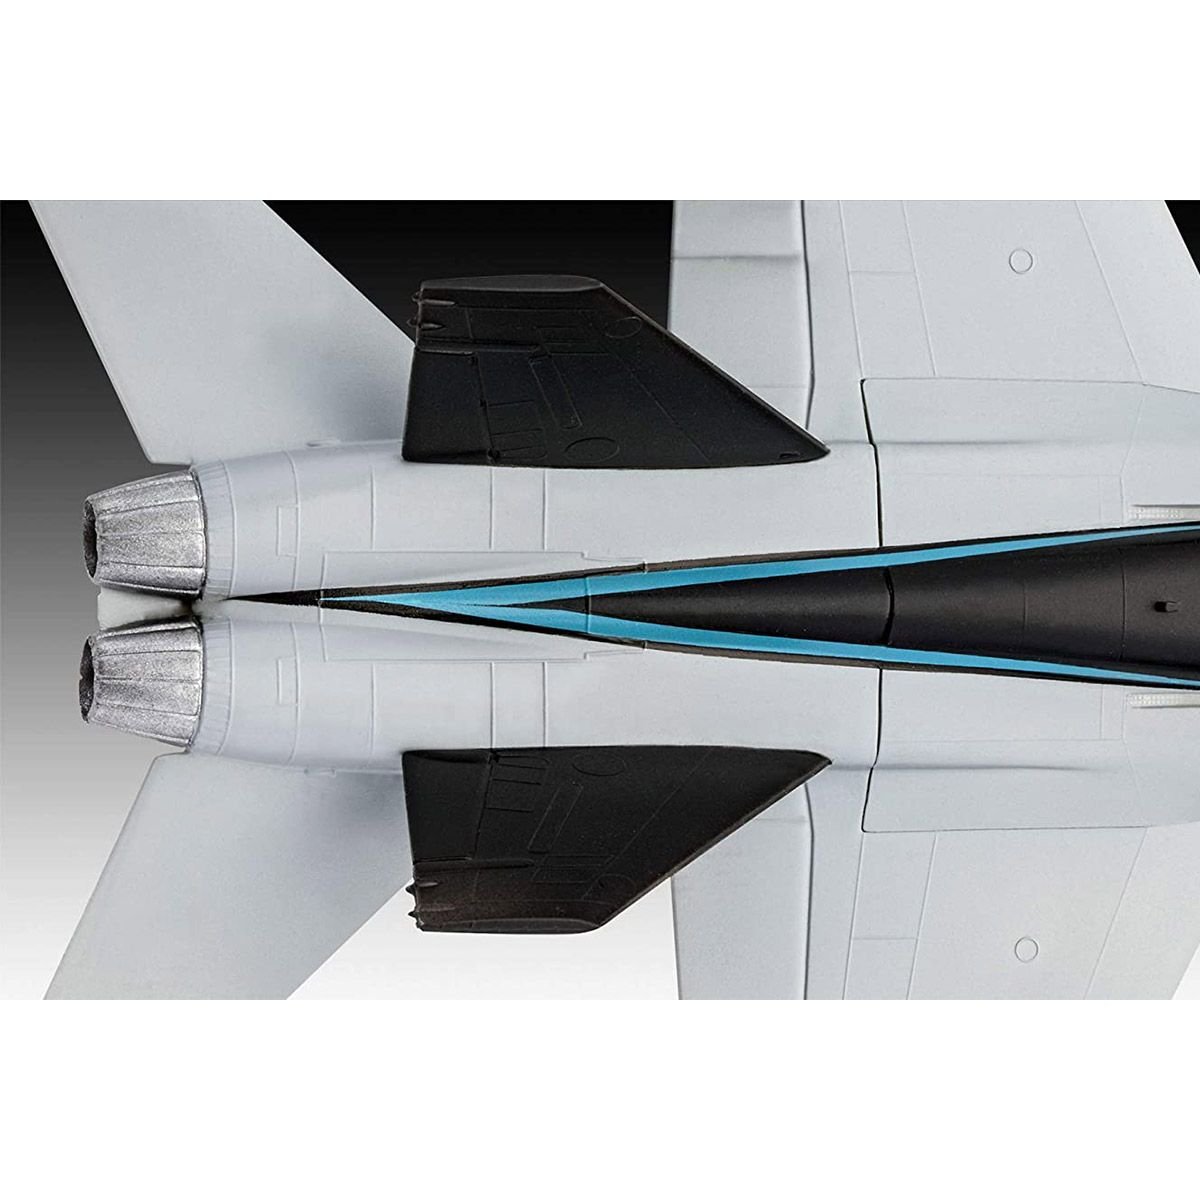 Сборная модель самолета Revell Набор F/A-18 Hornet из фильма Top Gun: Maverick, уровень 2, масштаб 1:72, 16 деталей (RVL-64965) - фото 3